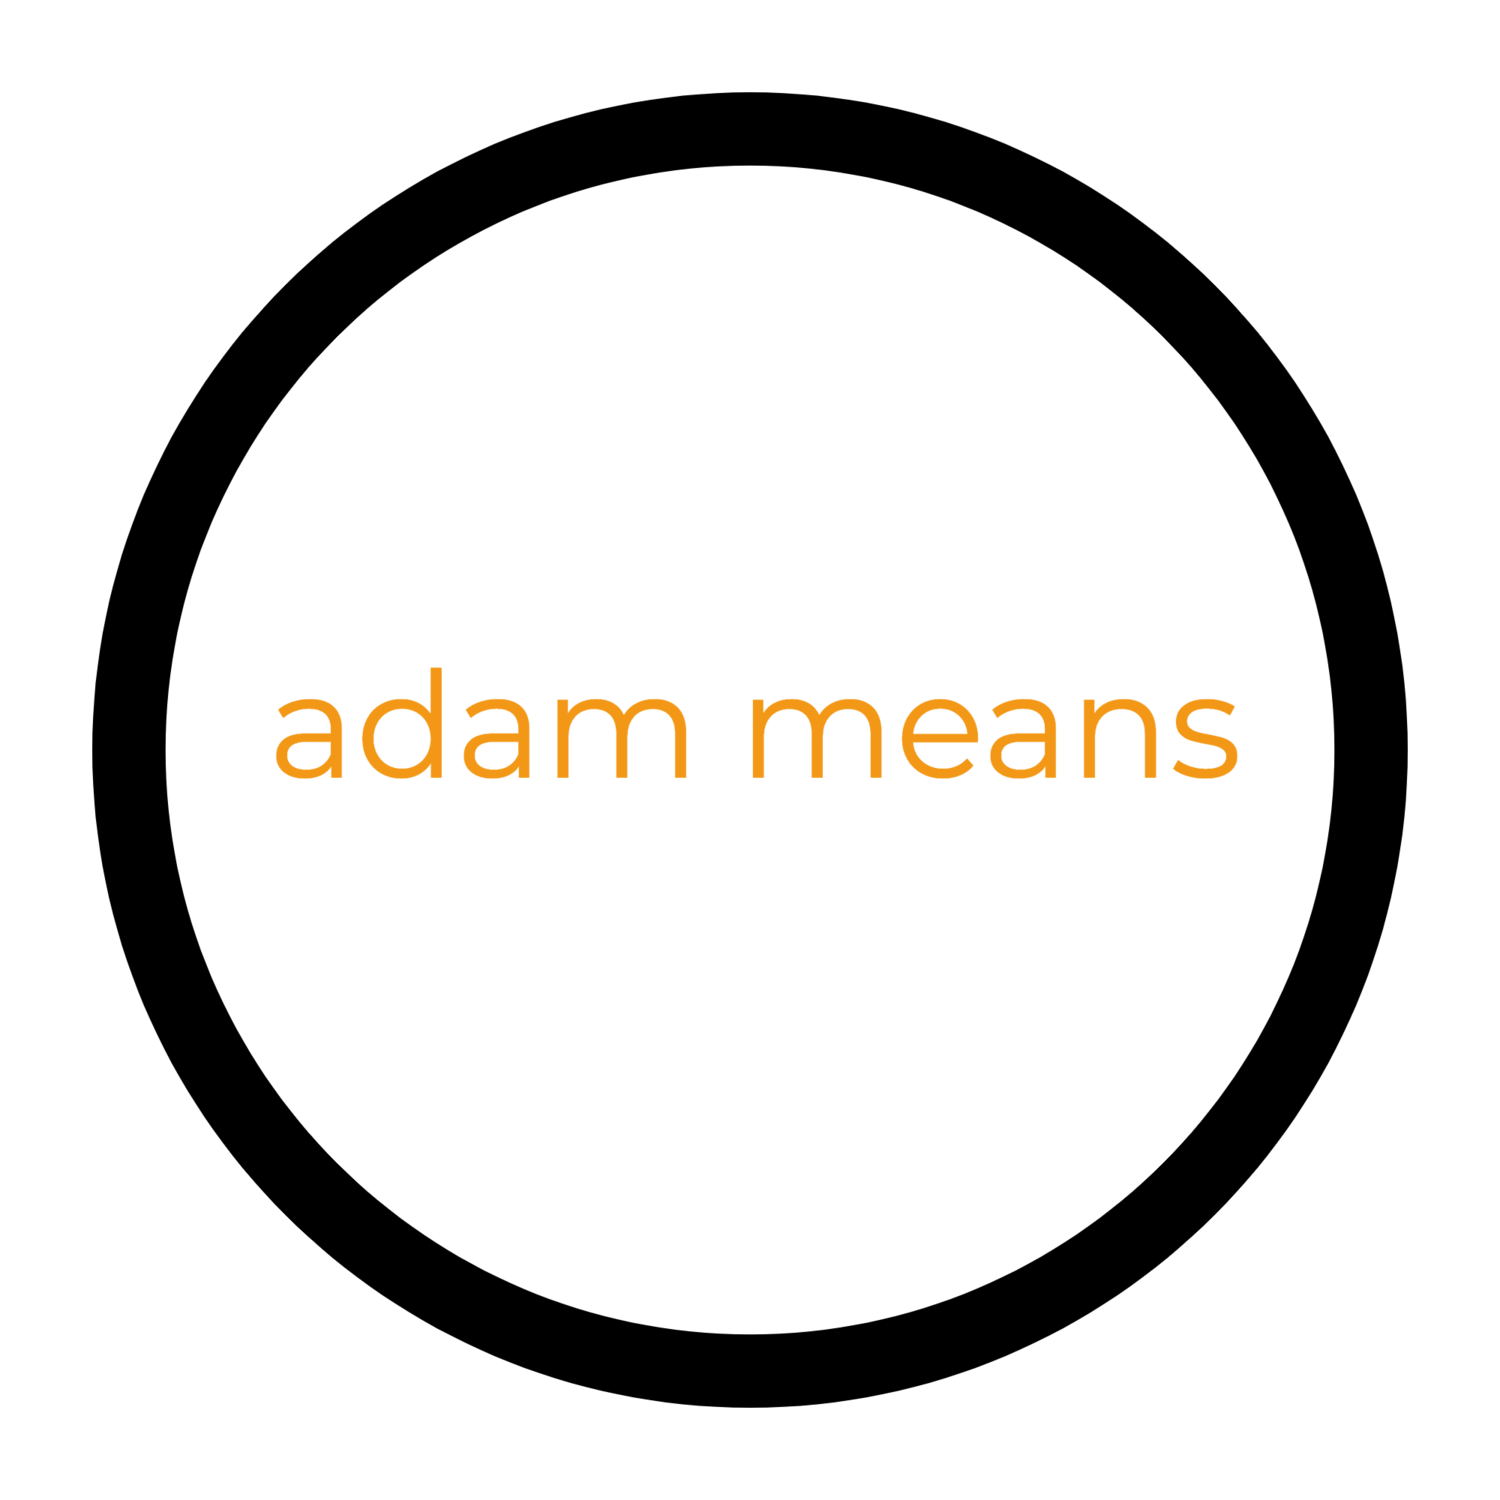 adam means